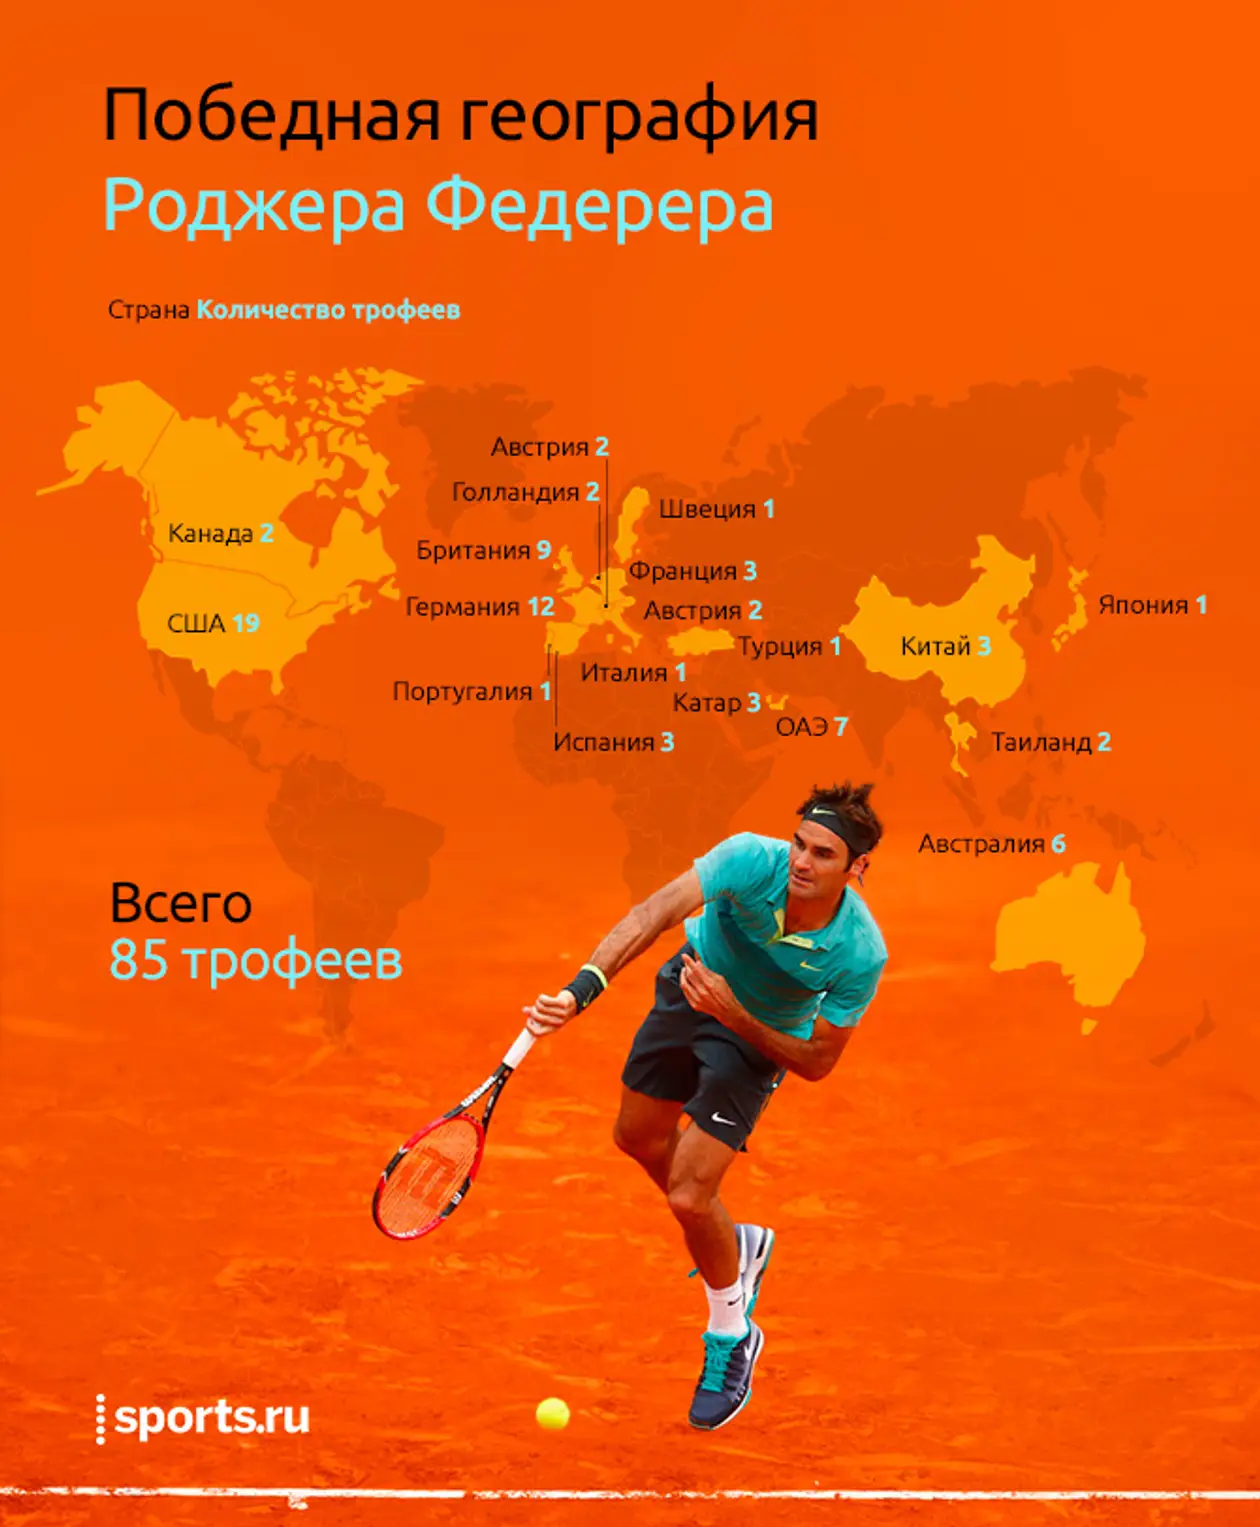 19 стран, в которых побеждал Роджер Федерер